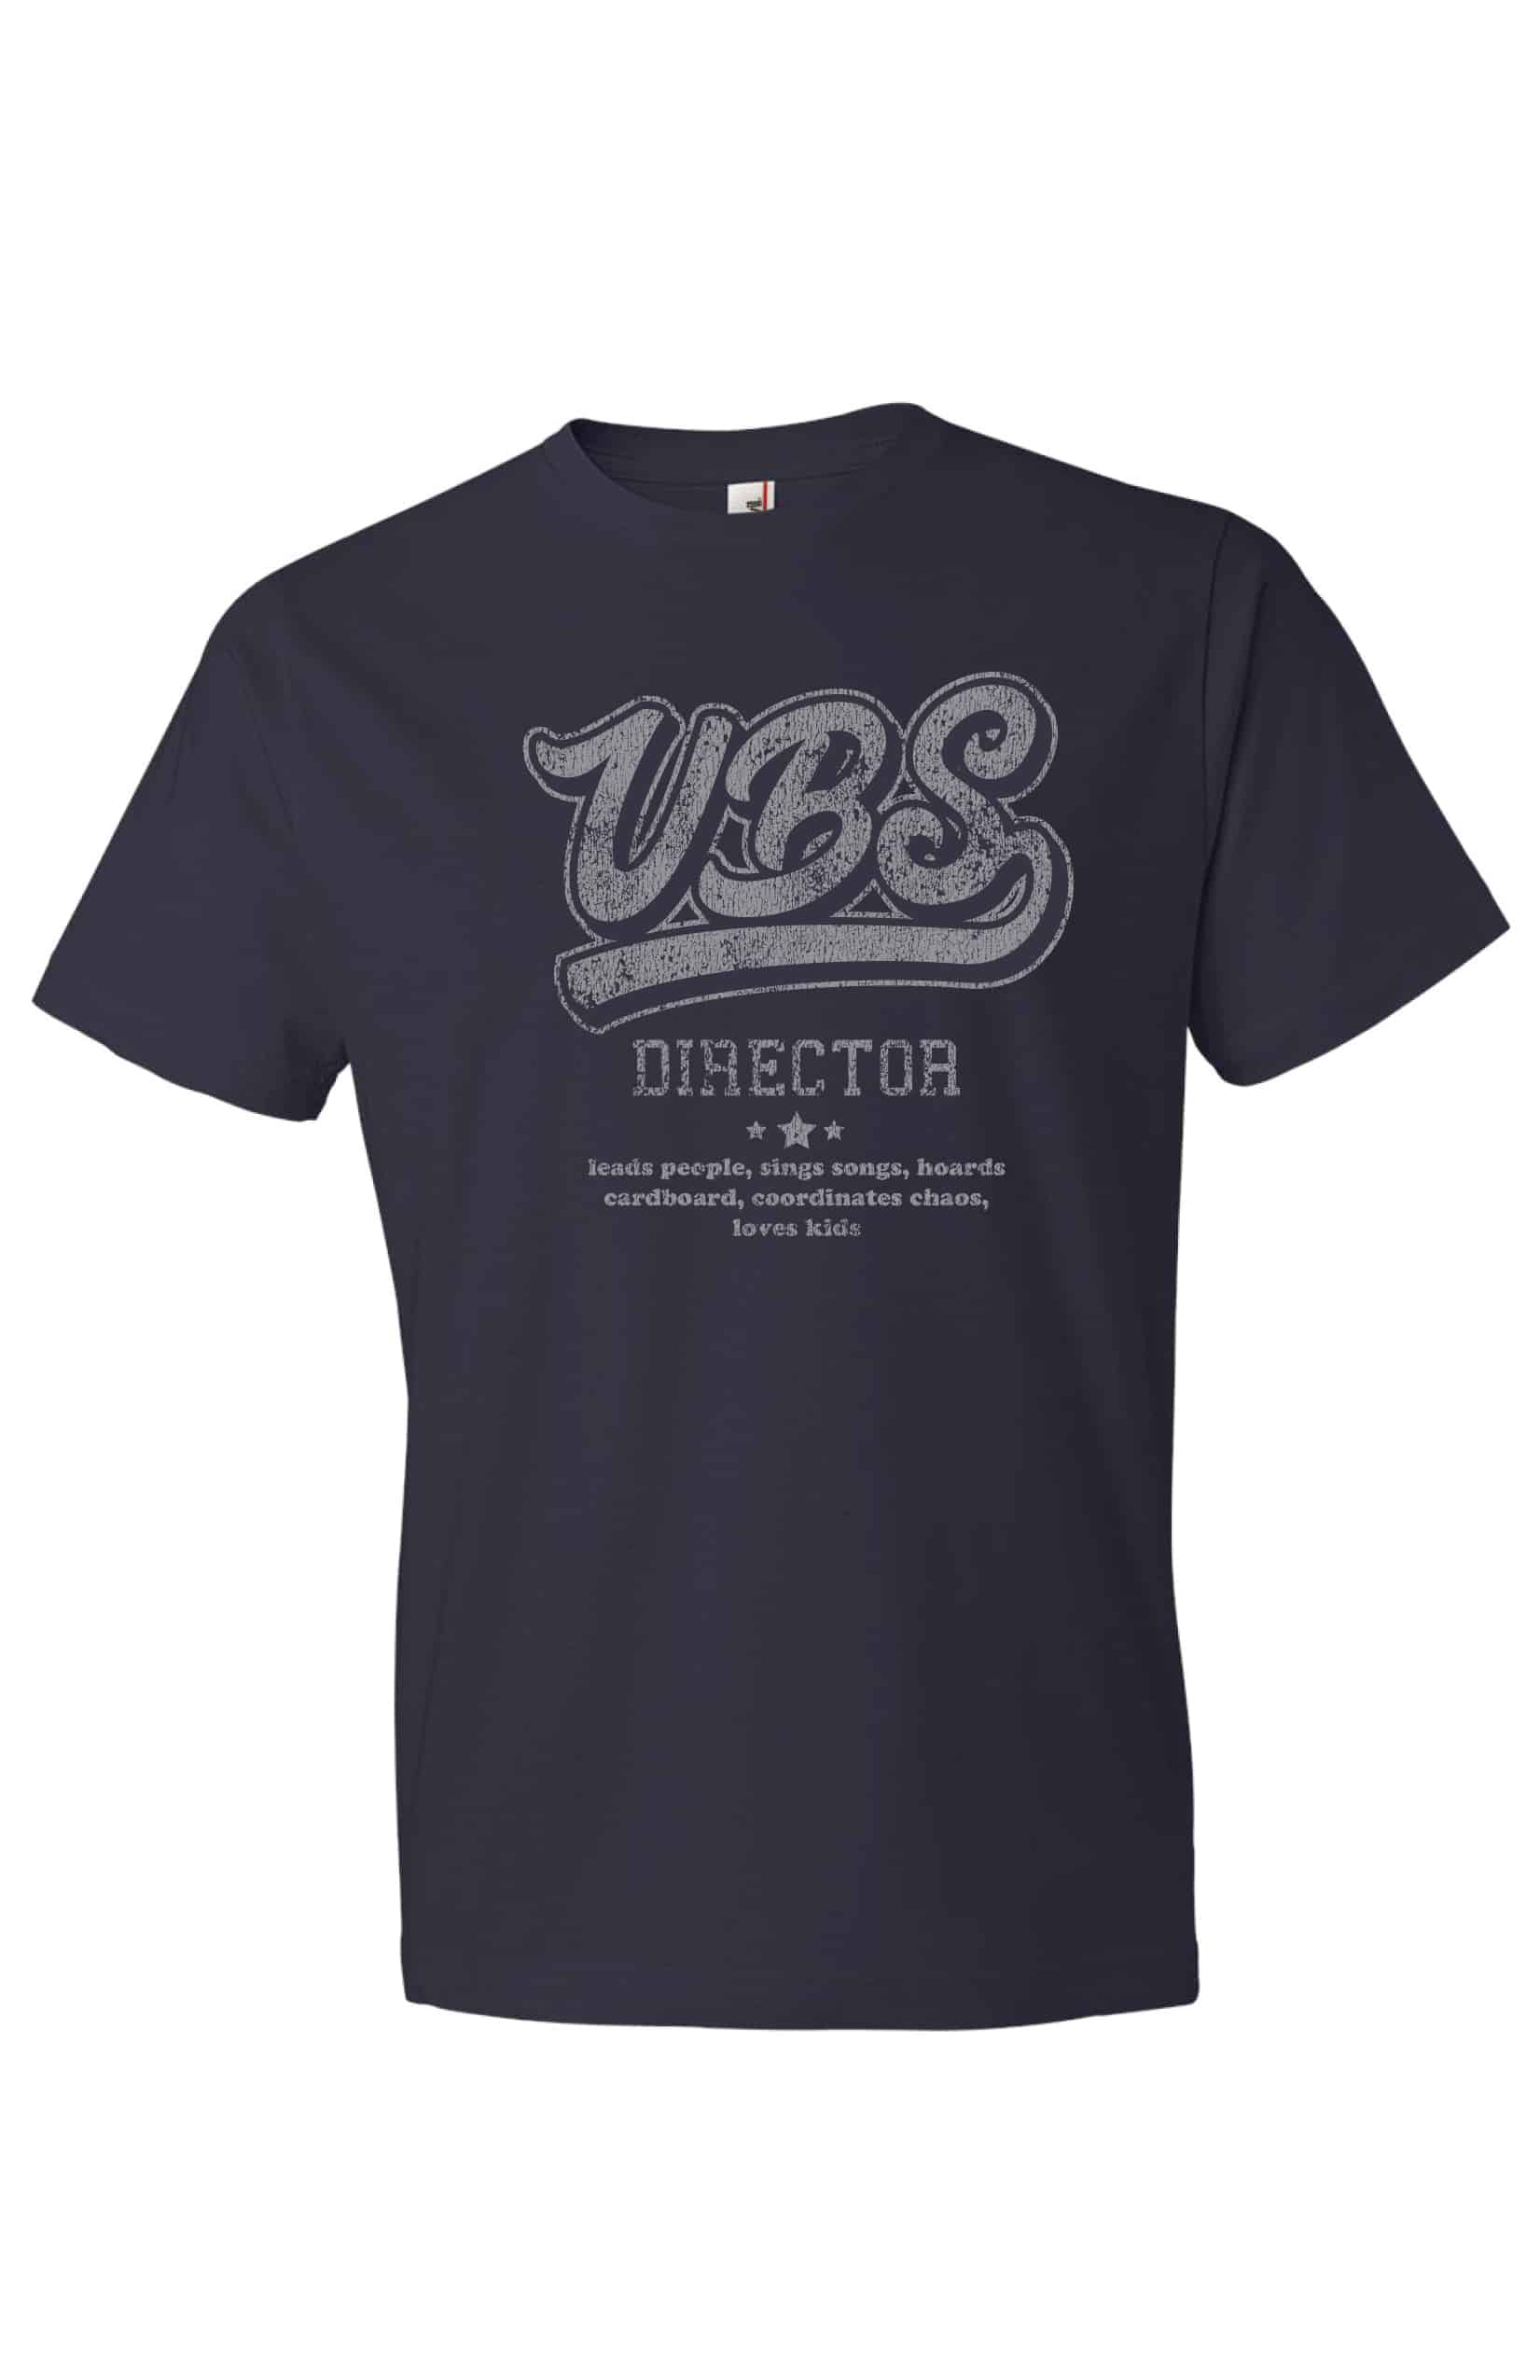 VBS Director T-Shirt